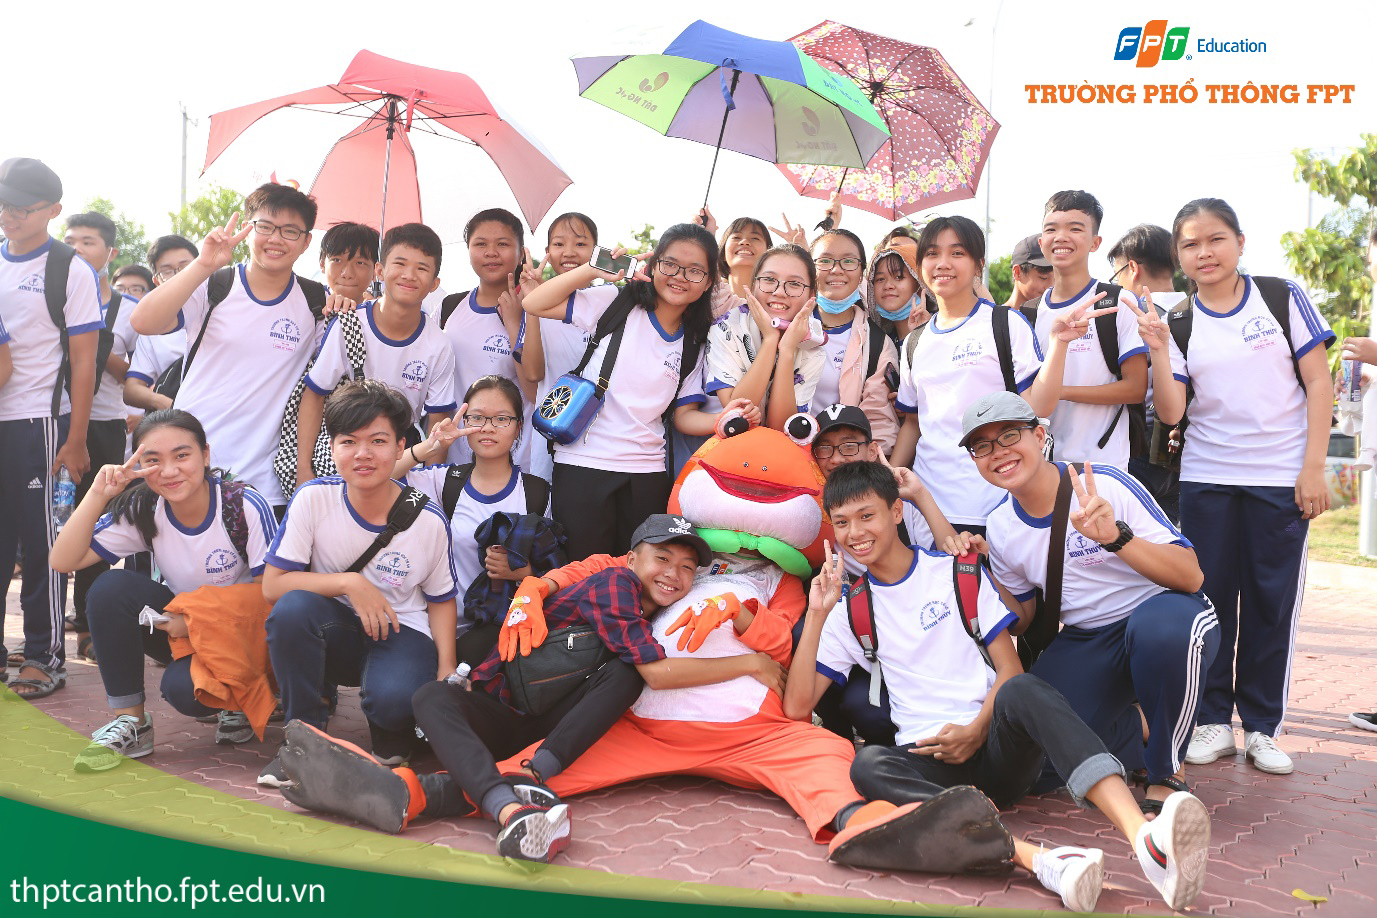 THPT FPT Cần Thơ tổ chức Big Open Day đầu tiên dành cho học sinh THCS tại khu vực Đồng bằng sông Cửu Long